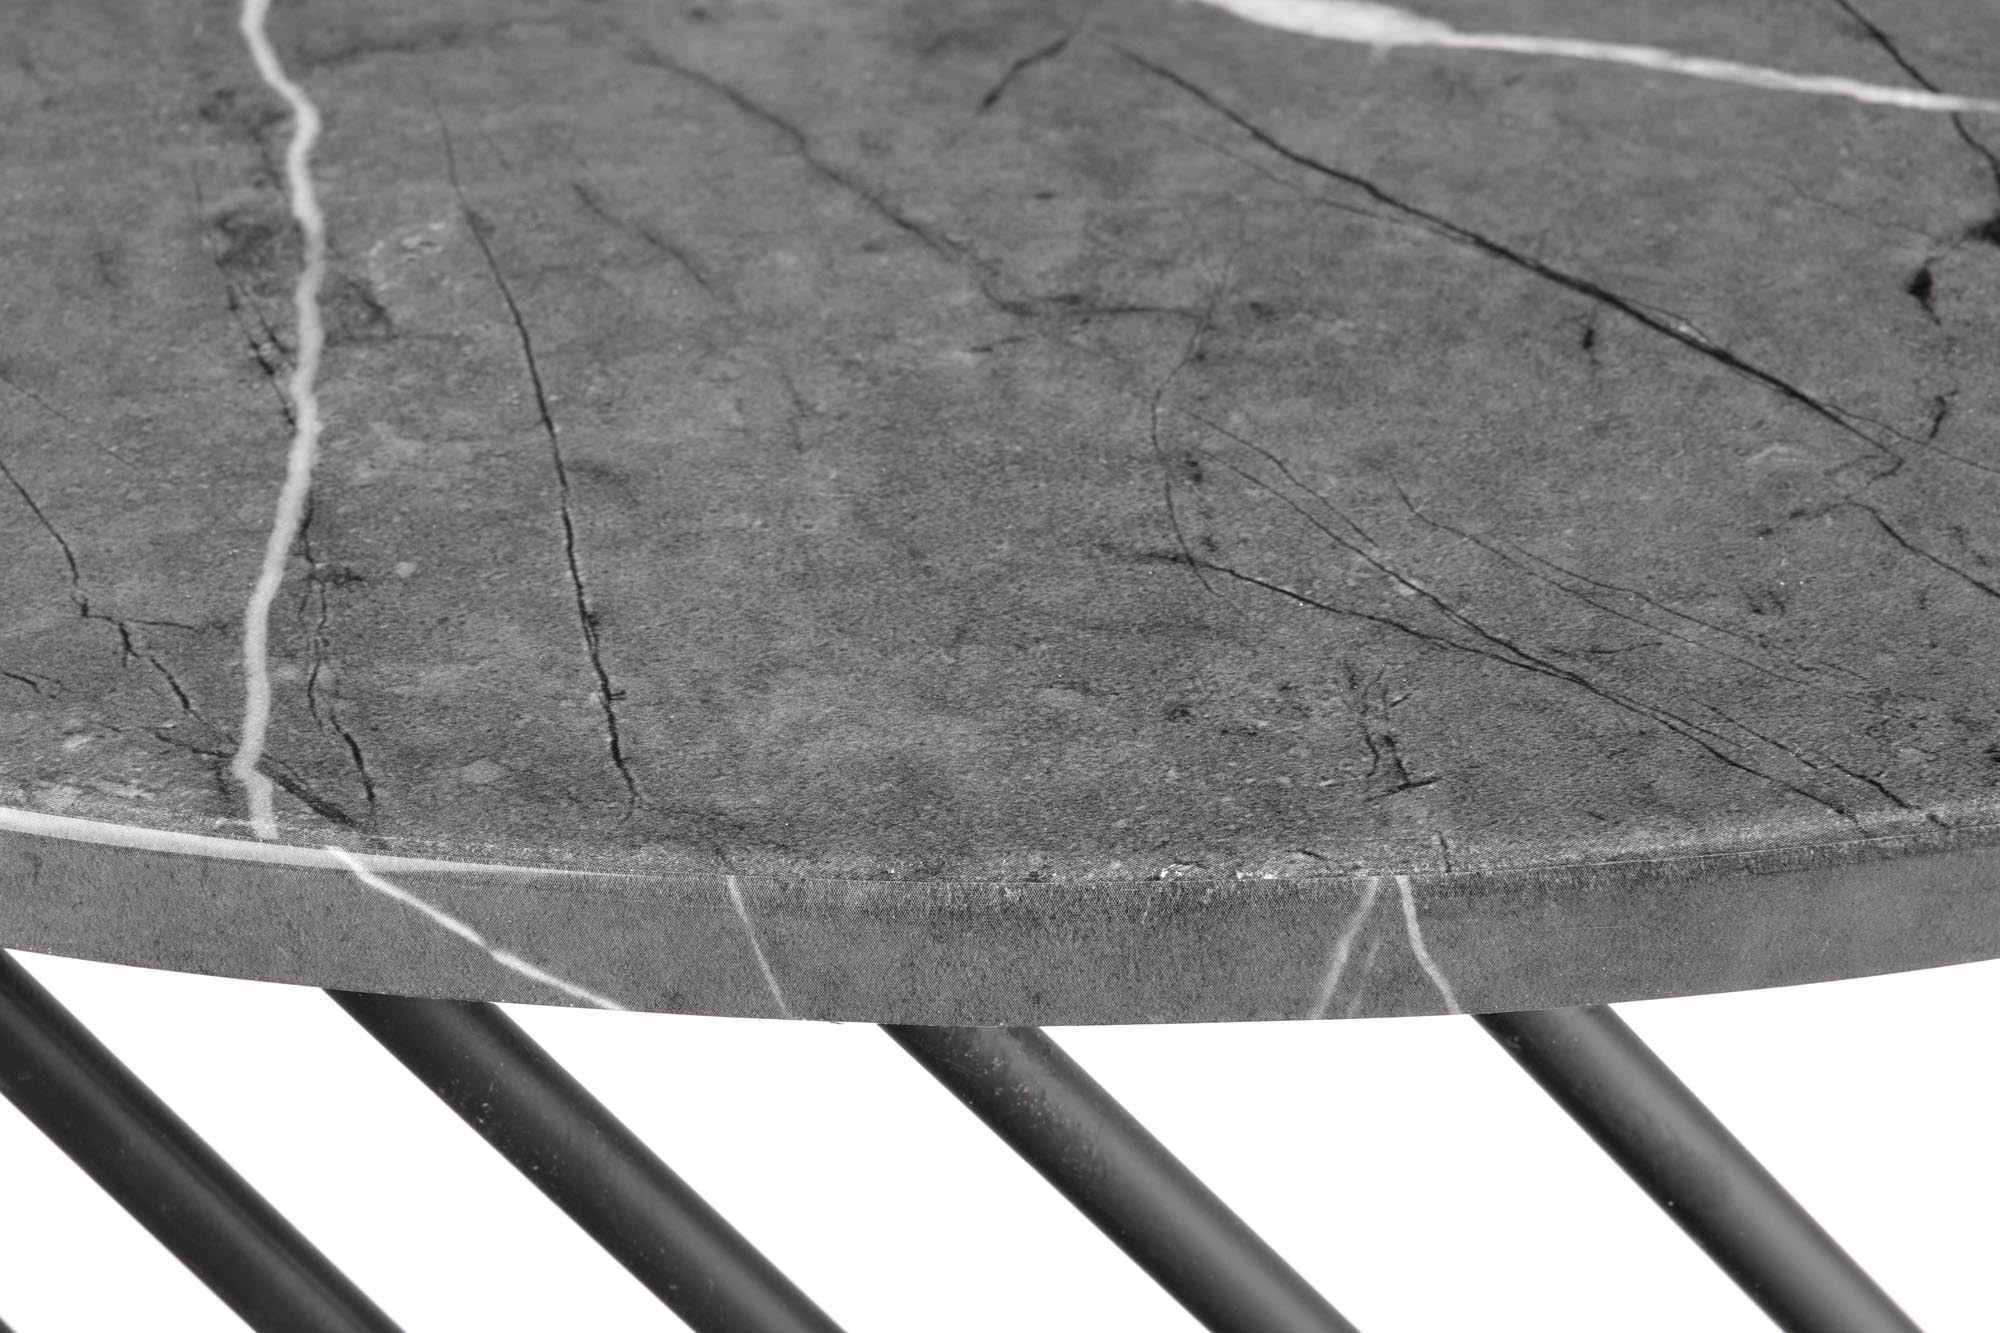 MINERWA ława blat - popielaty marmur, stelaż - czarny